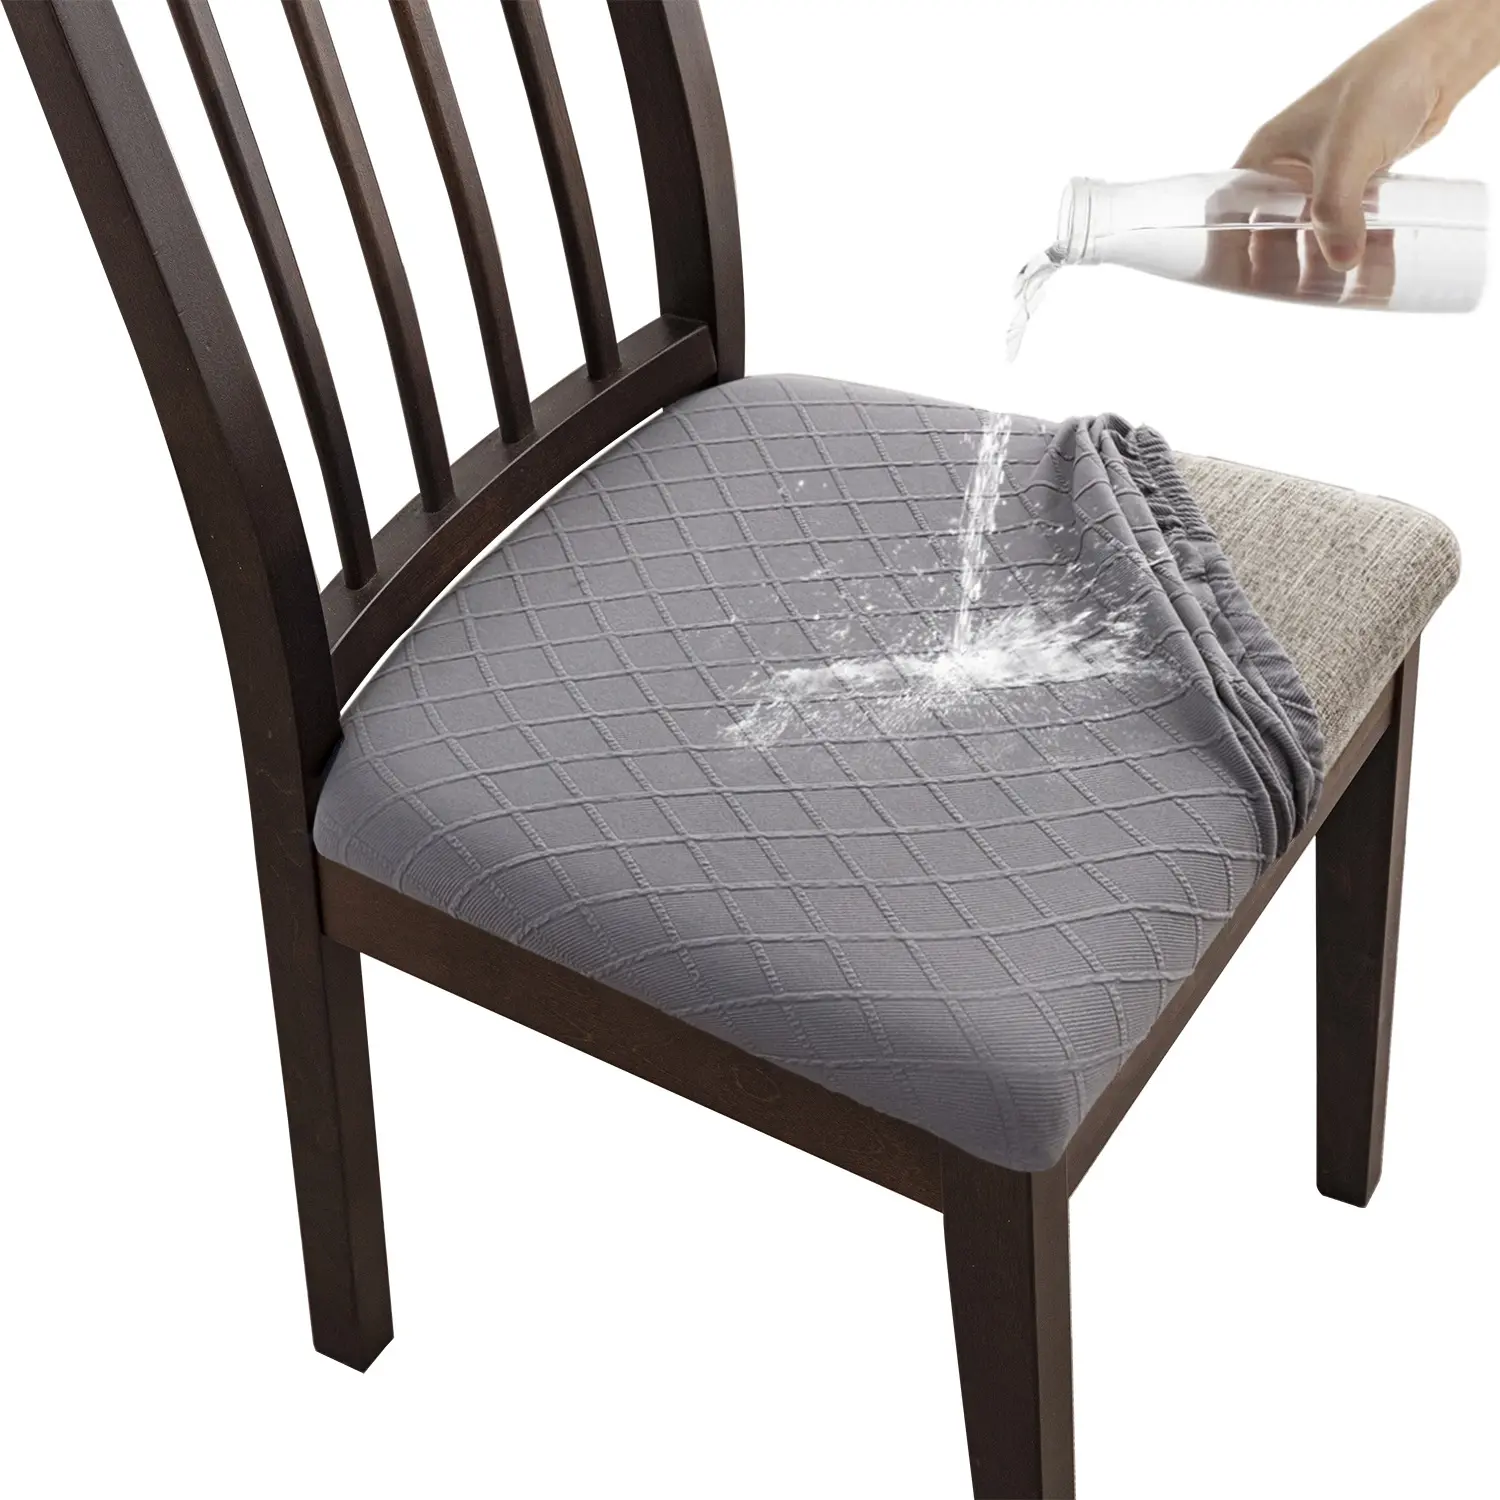 Fodera per cuscino per sedia jacquard di alta qualità fodera per sedia da tavolo da pranzo dell'hotel